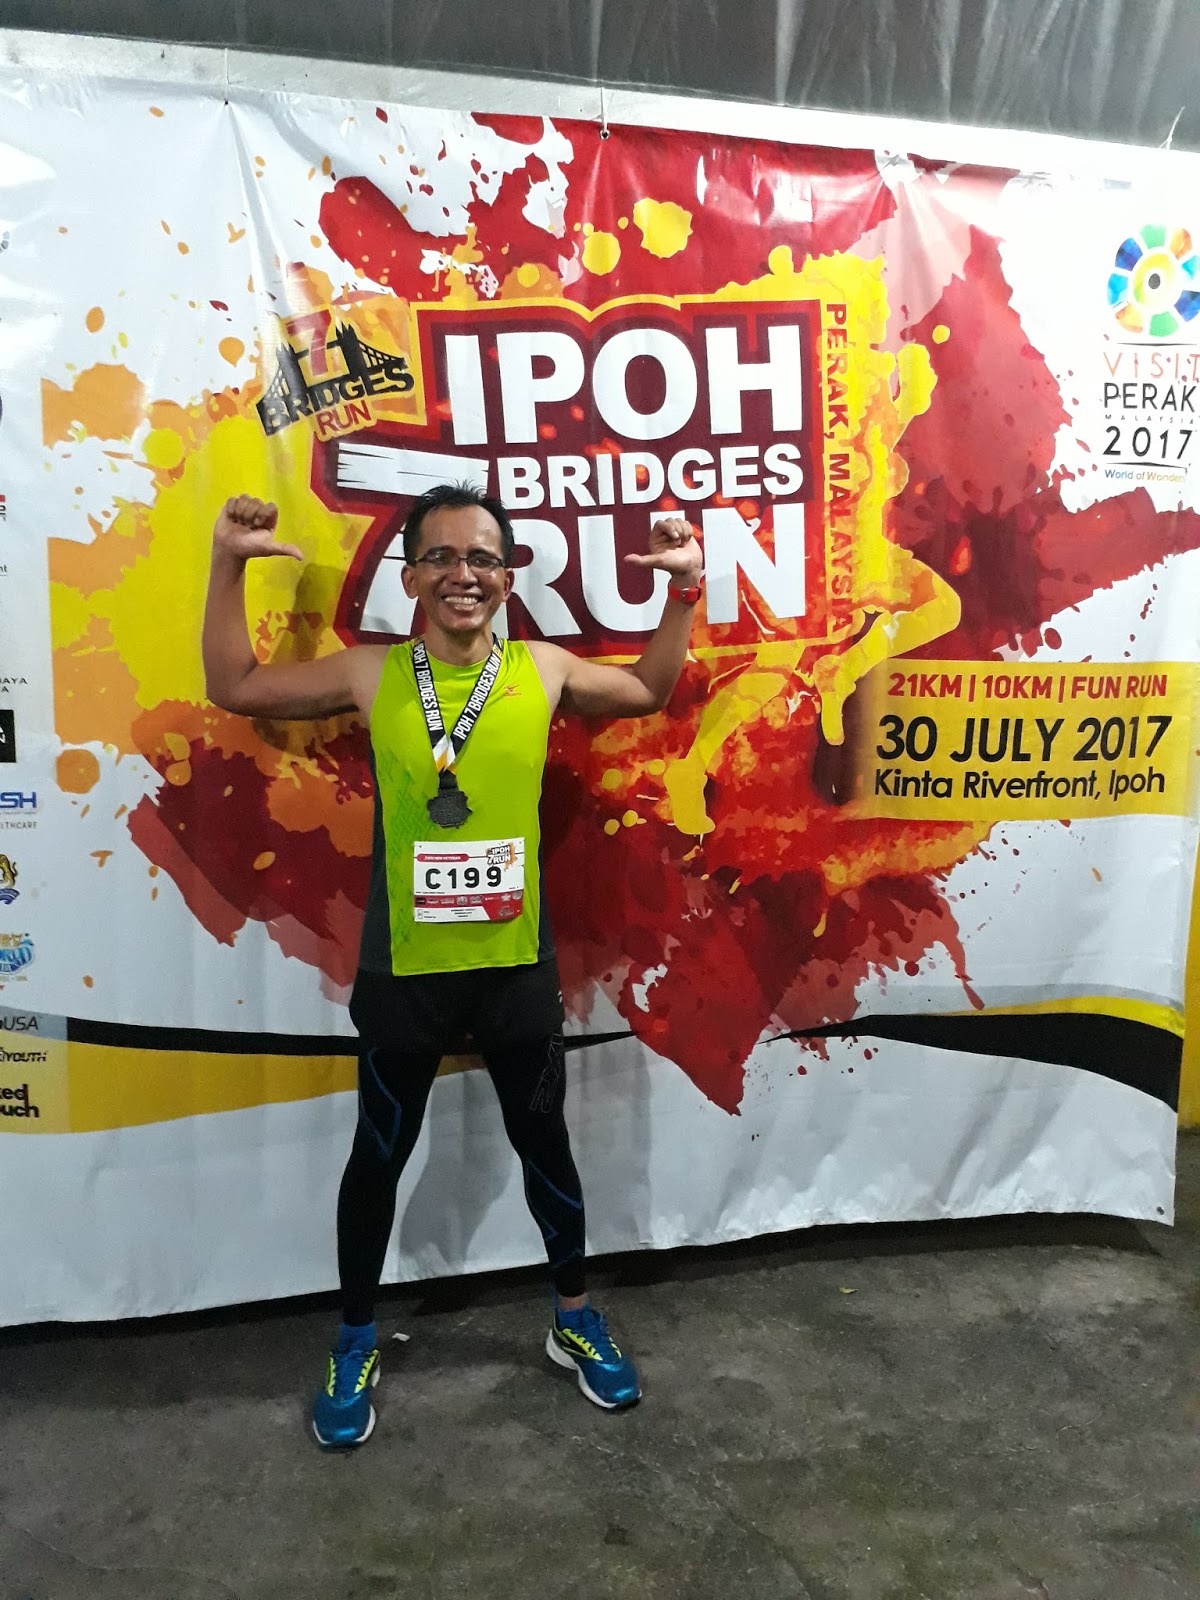 Cerita Saya Zaini Ipoh 7 Bridges Run 2017